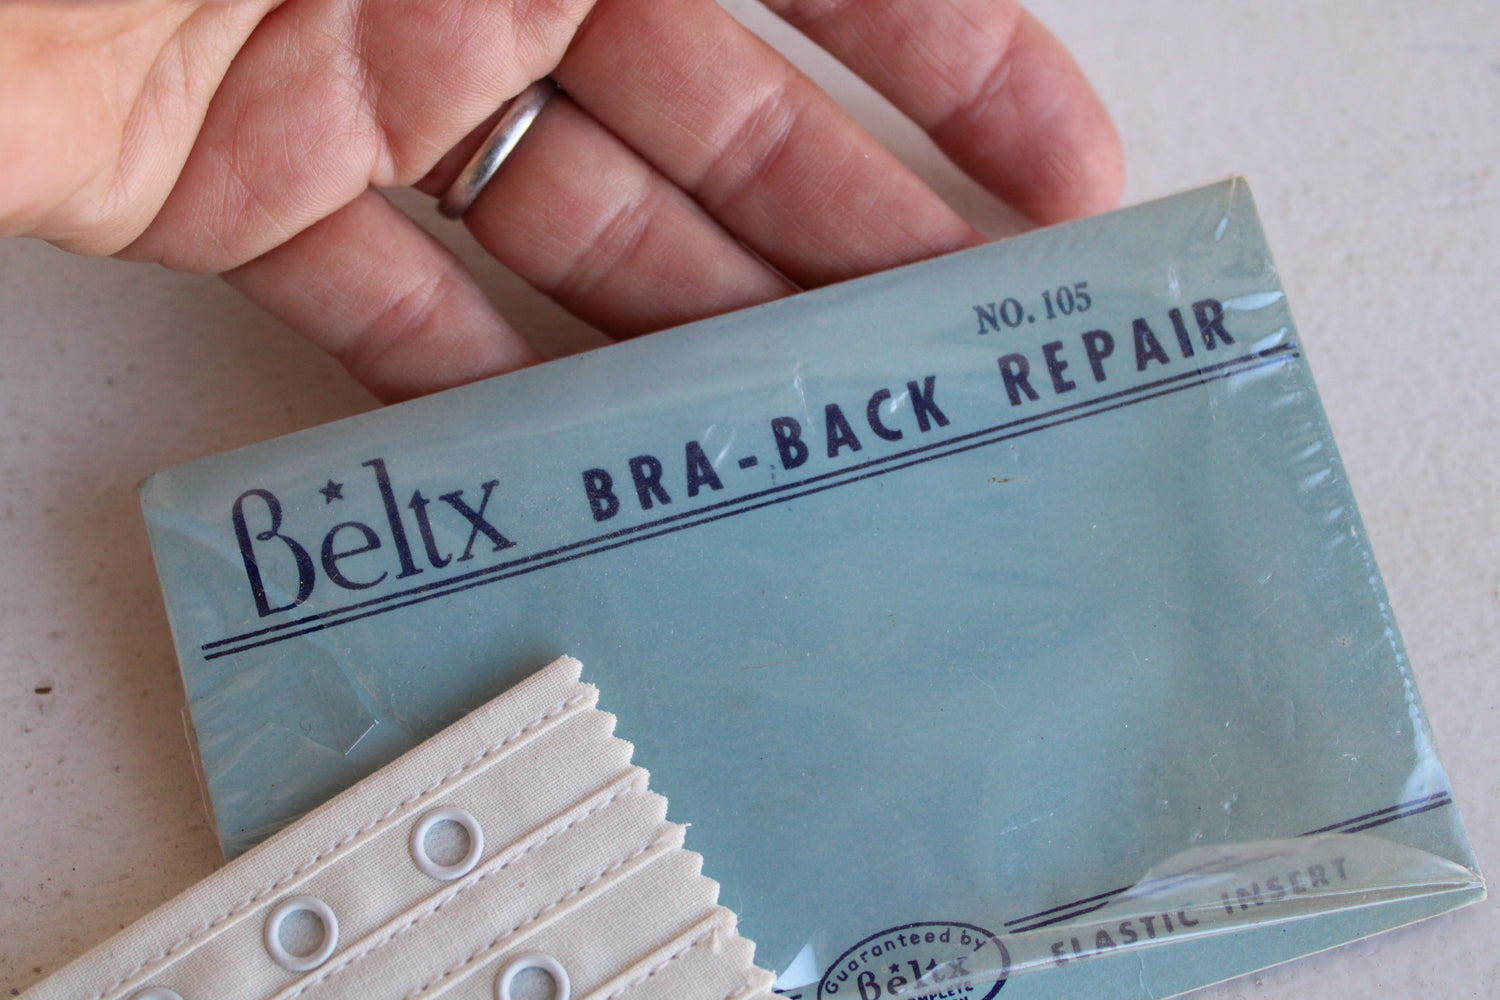 Vintage 1960s Beltx Bra Back Expander or Repair Insert